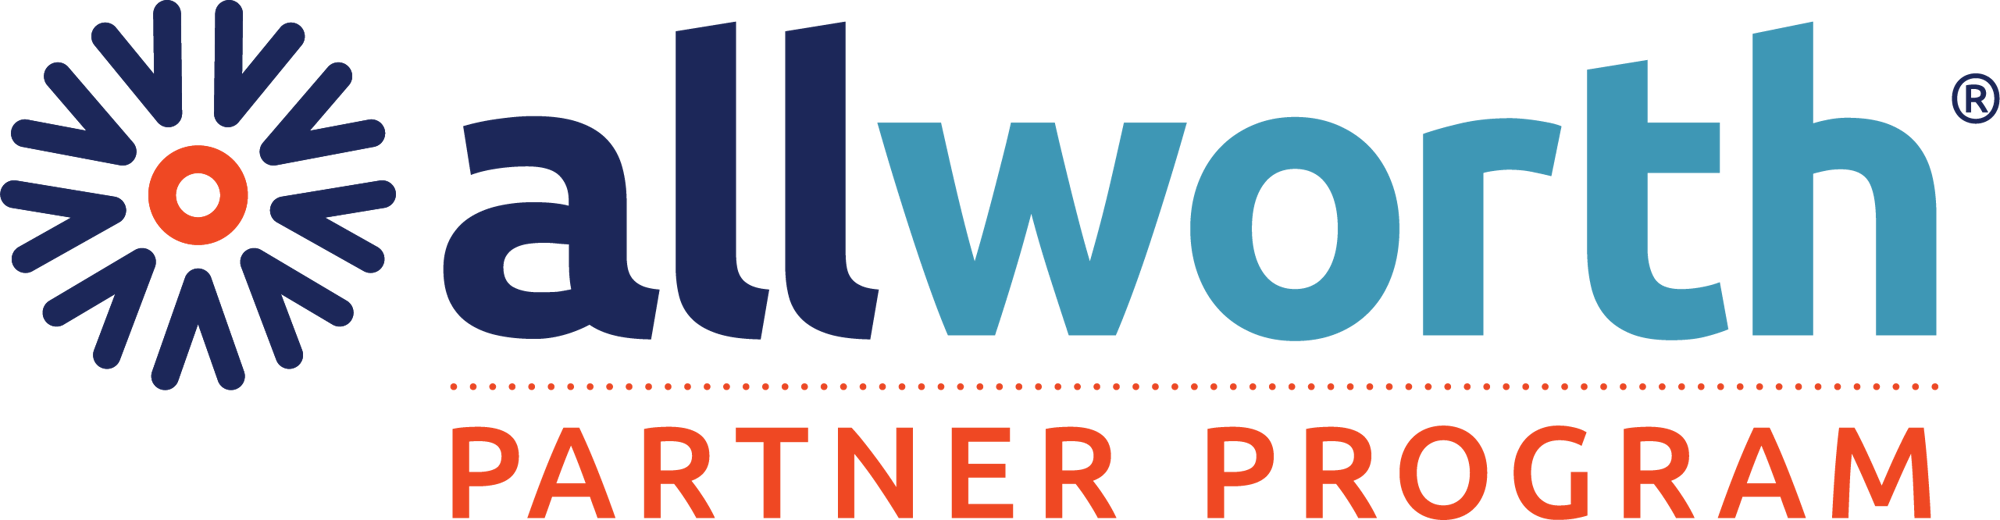 Allworth_PP_logo_RGB